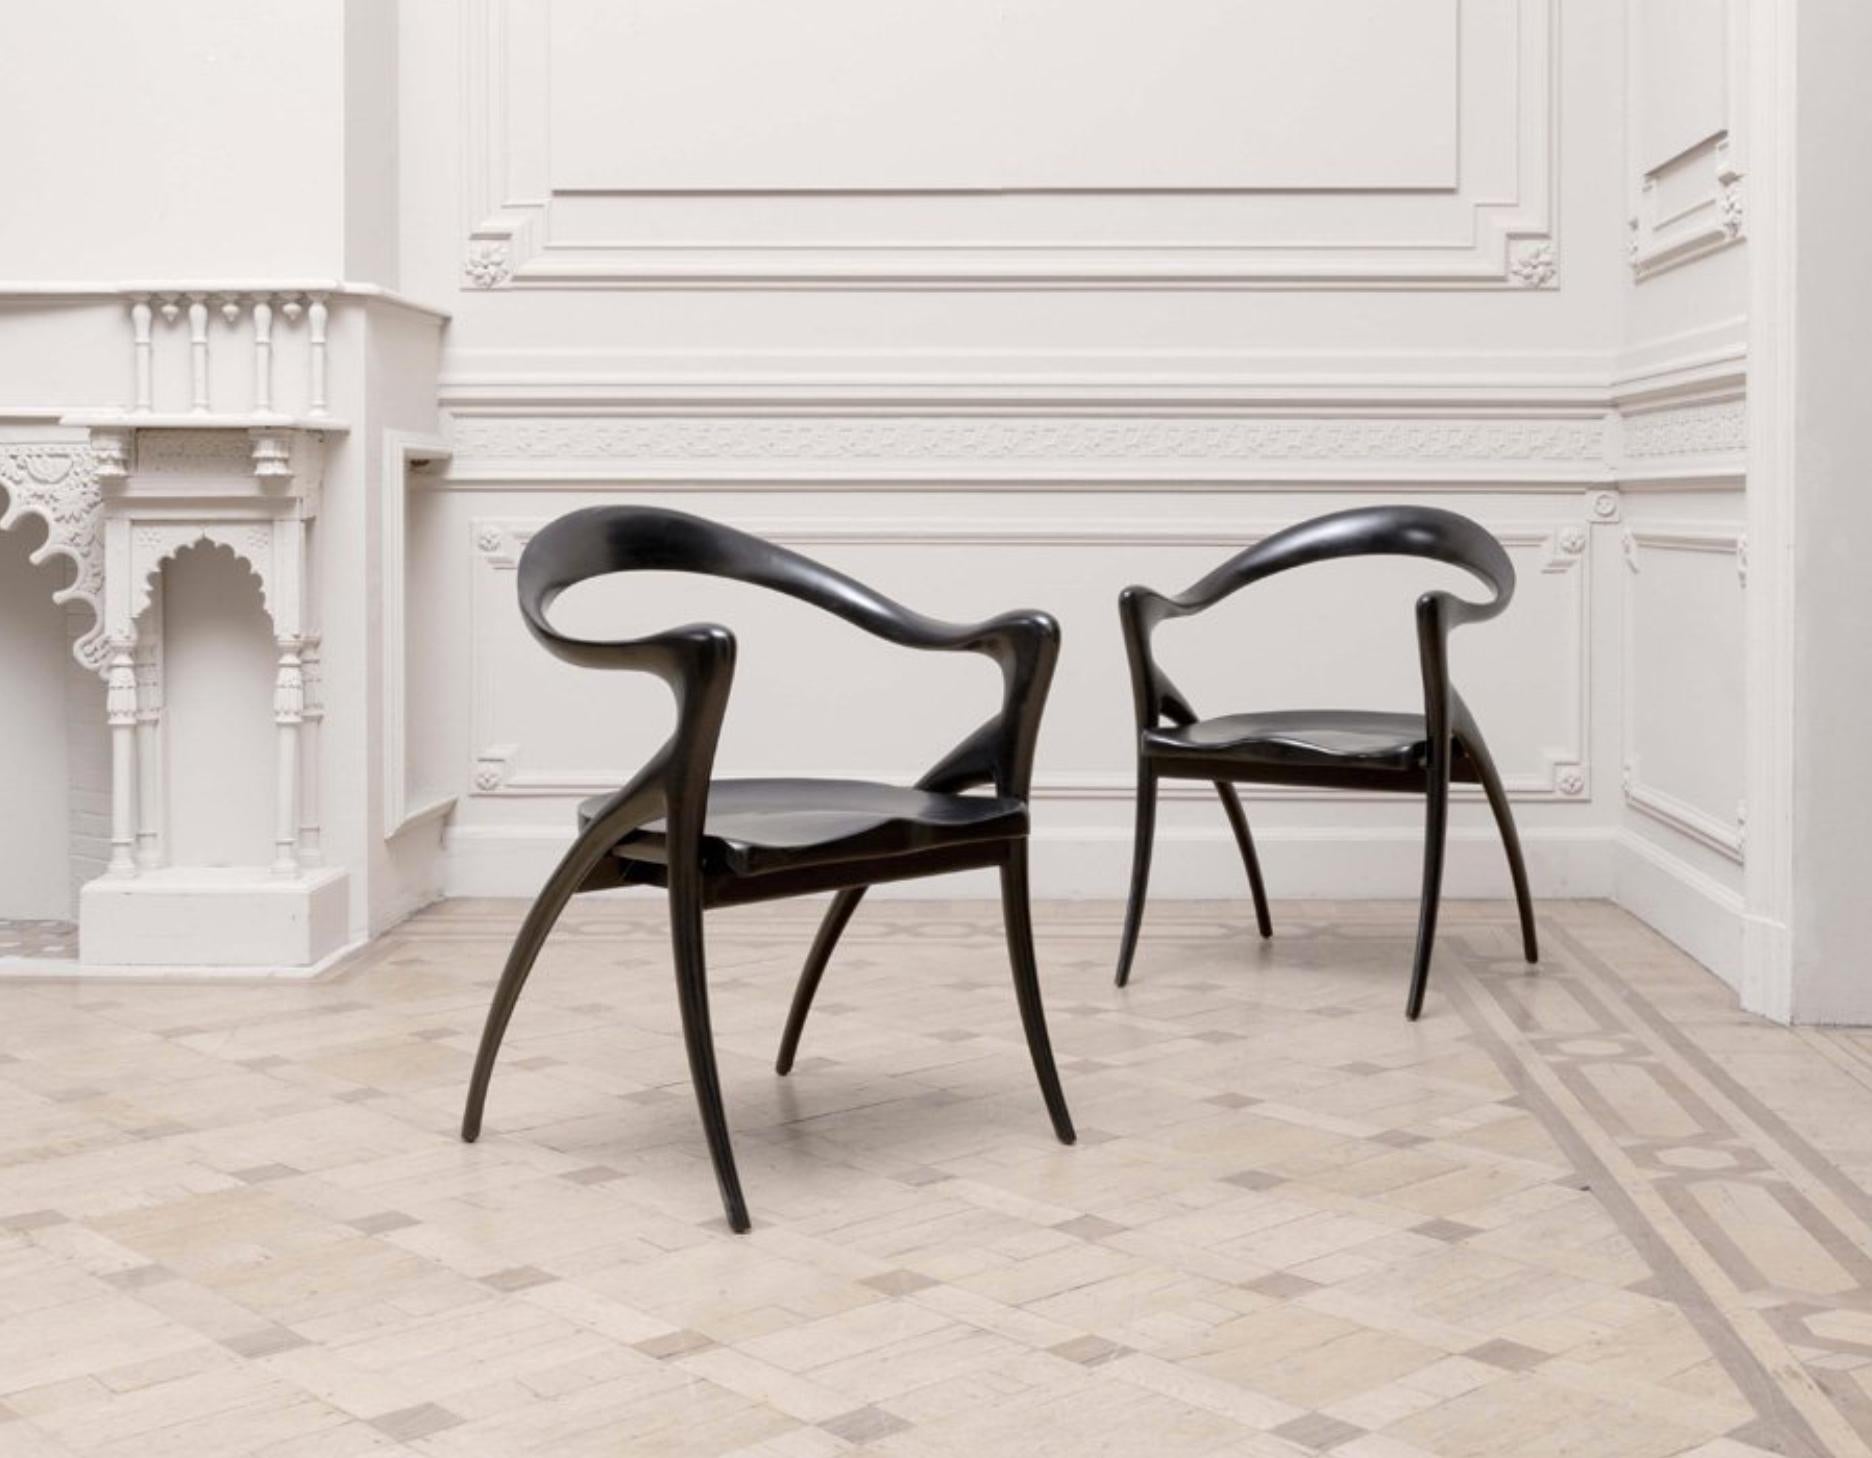 Grands fauteuils d'Olivier de Schrijver (né en 1958) en couleur noir satiné.
Modèle Ode à la femme avec bandeau ondulé en acajou prolongé par les accoudoirs et la base, sièges incurvés.